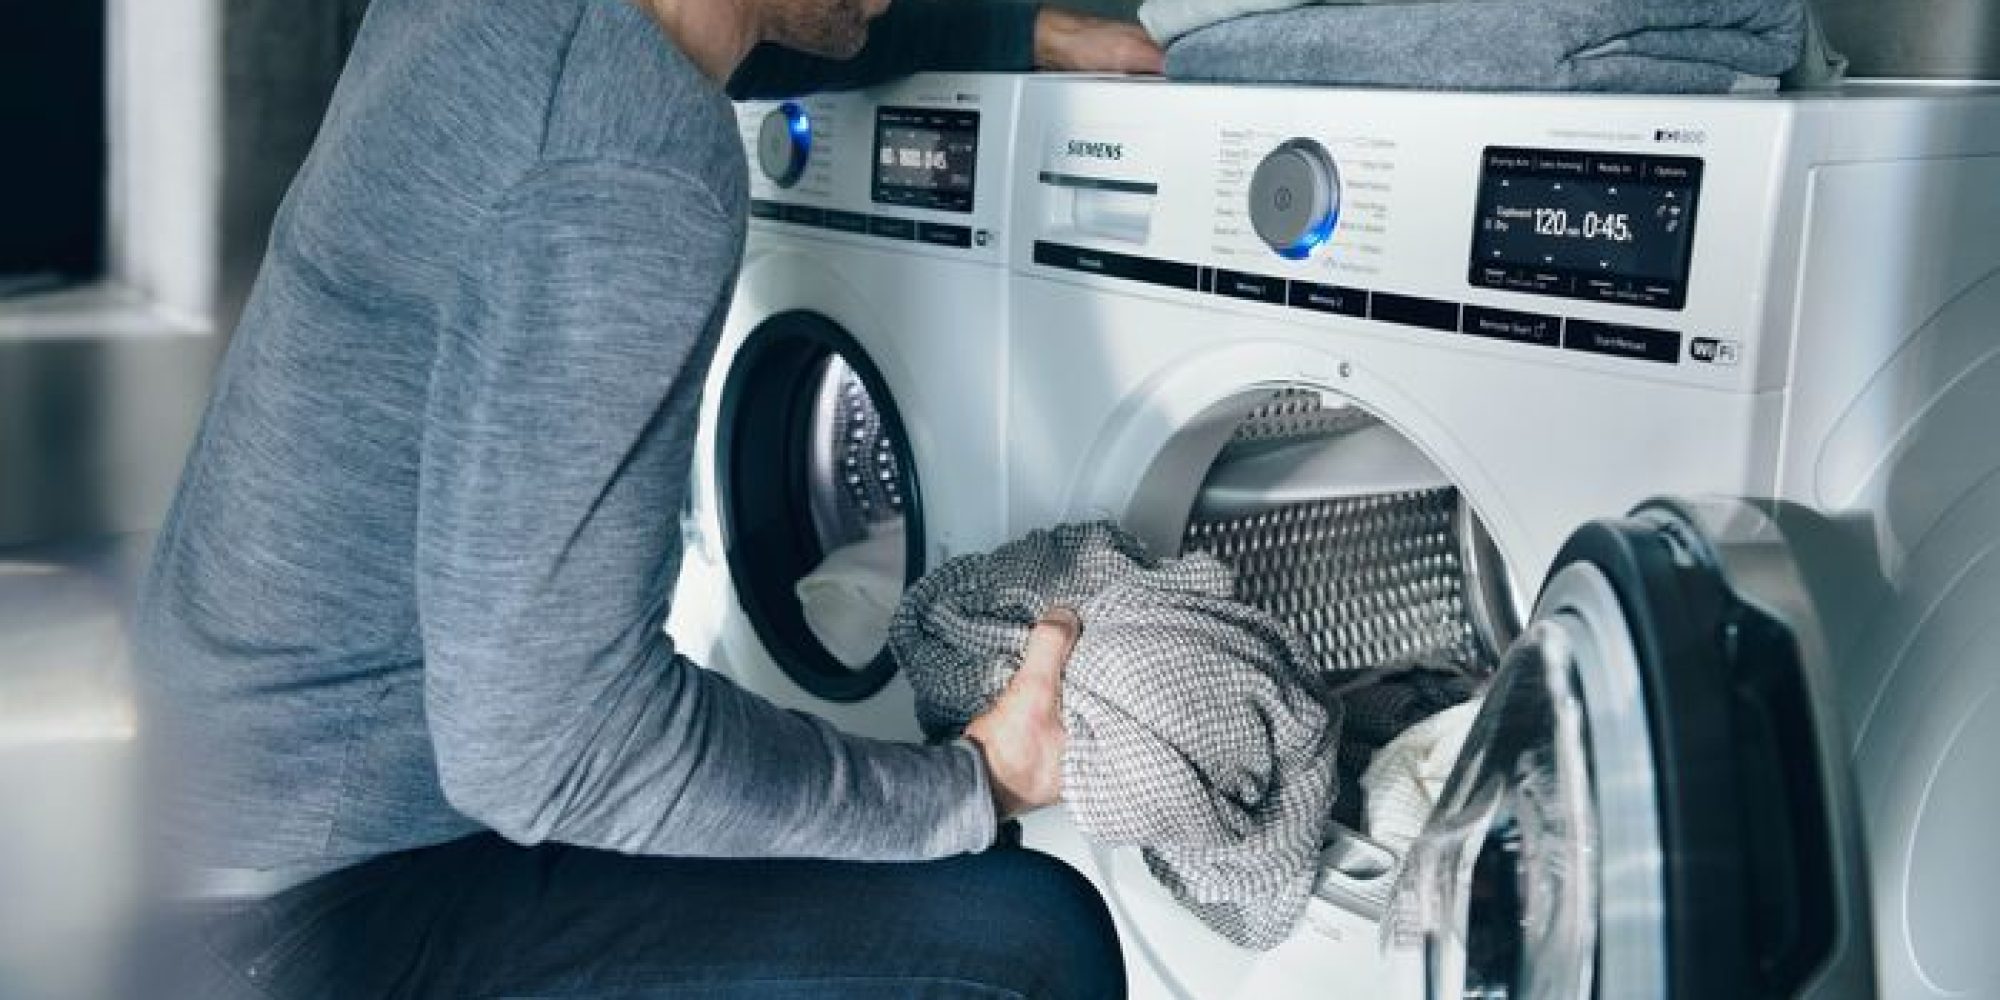 Siemens wasmachines hebben veel wasprogramma's, waaronder varioSpeed.